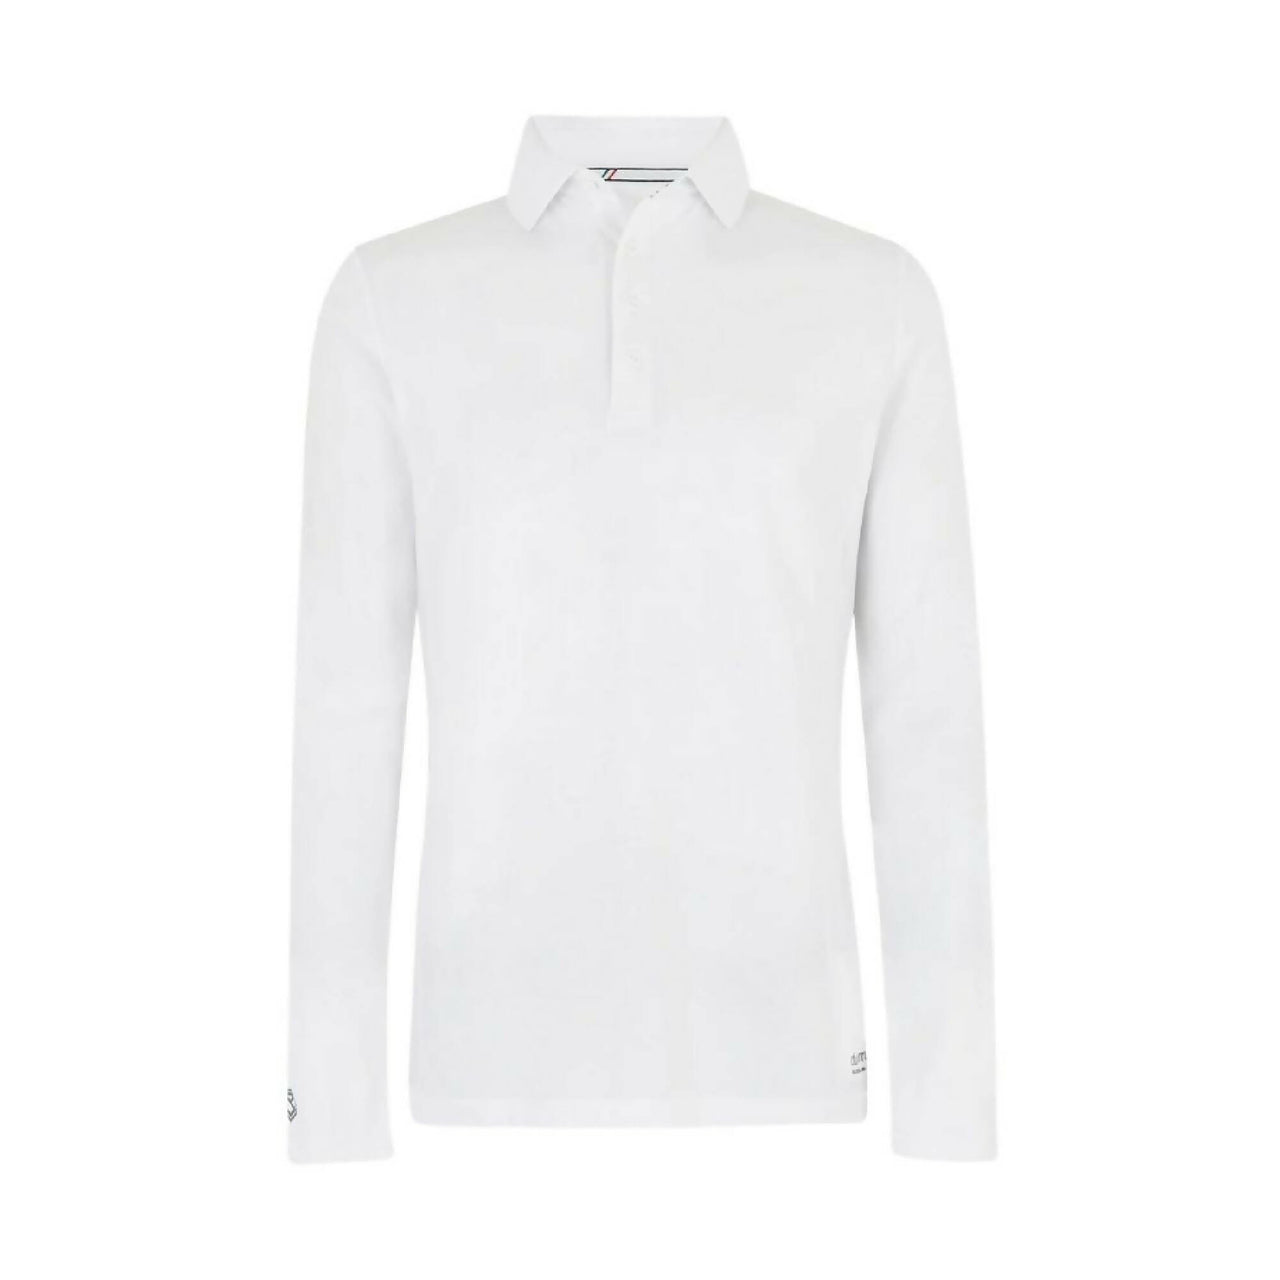 DUBARRY Freshford Long Sleeve Polo WHITE (Online only*)